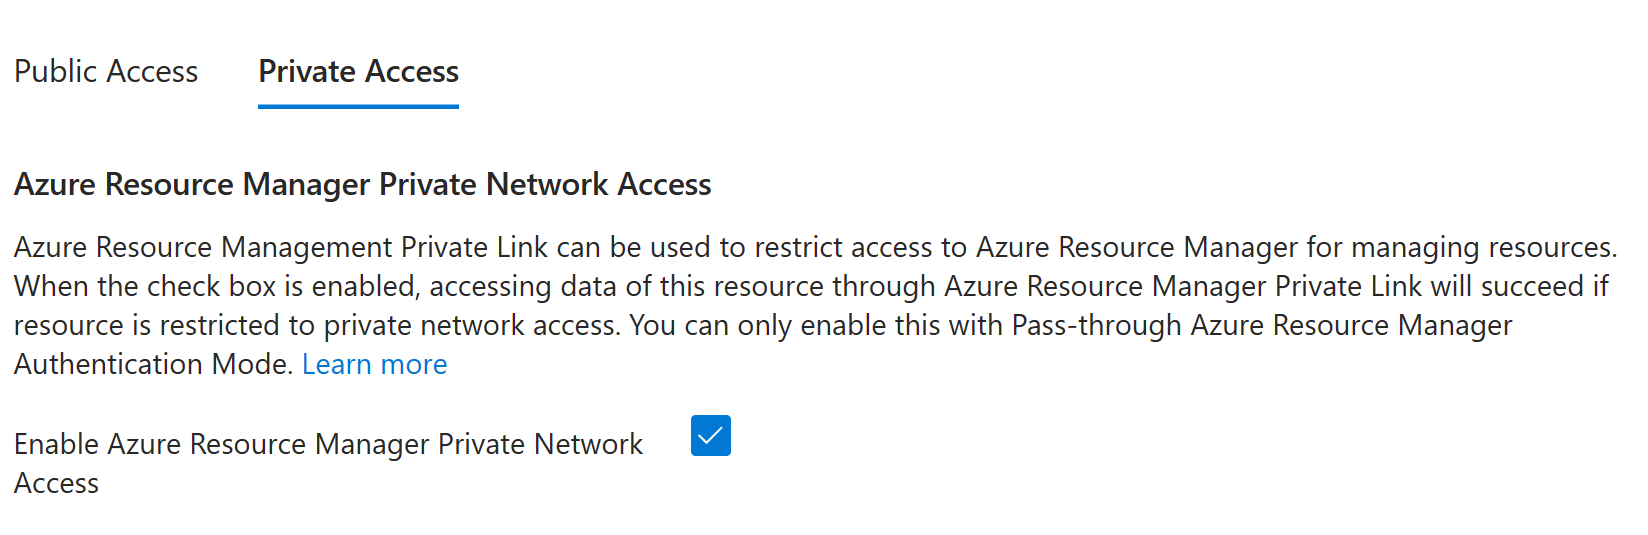 [Azure Resource Manager のプライベート アクセスを有効にする] がオンになっていることを示すスクリーンショット。